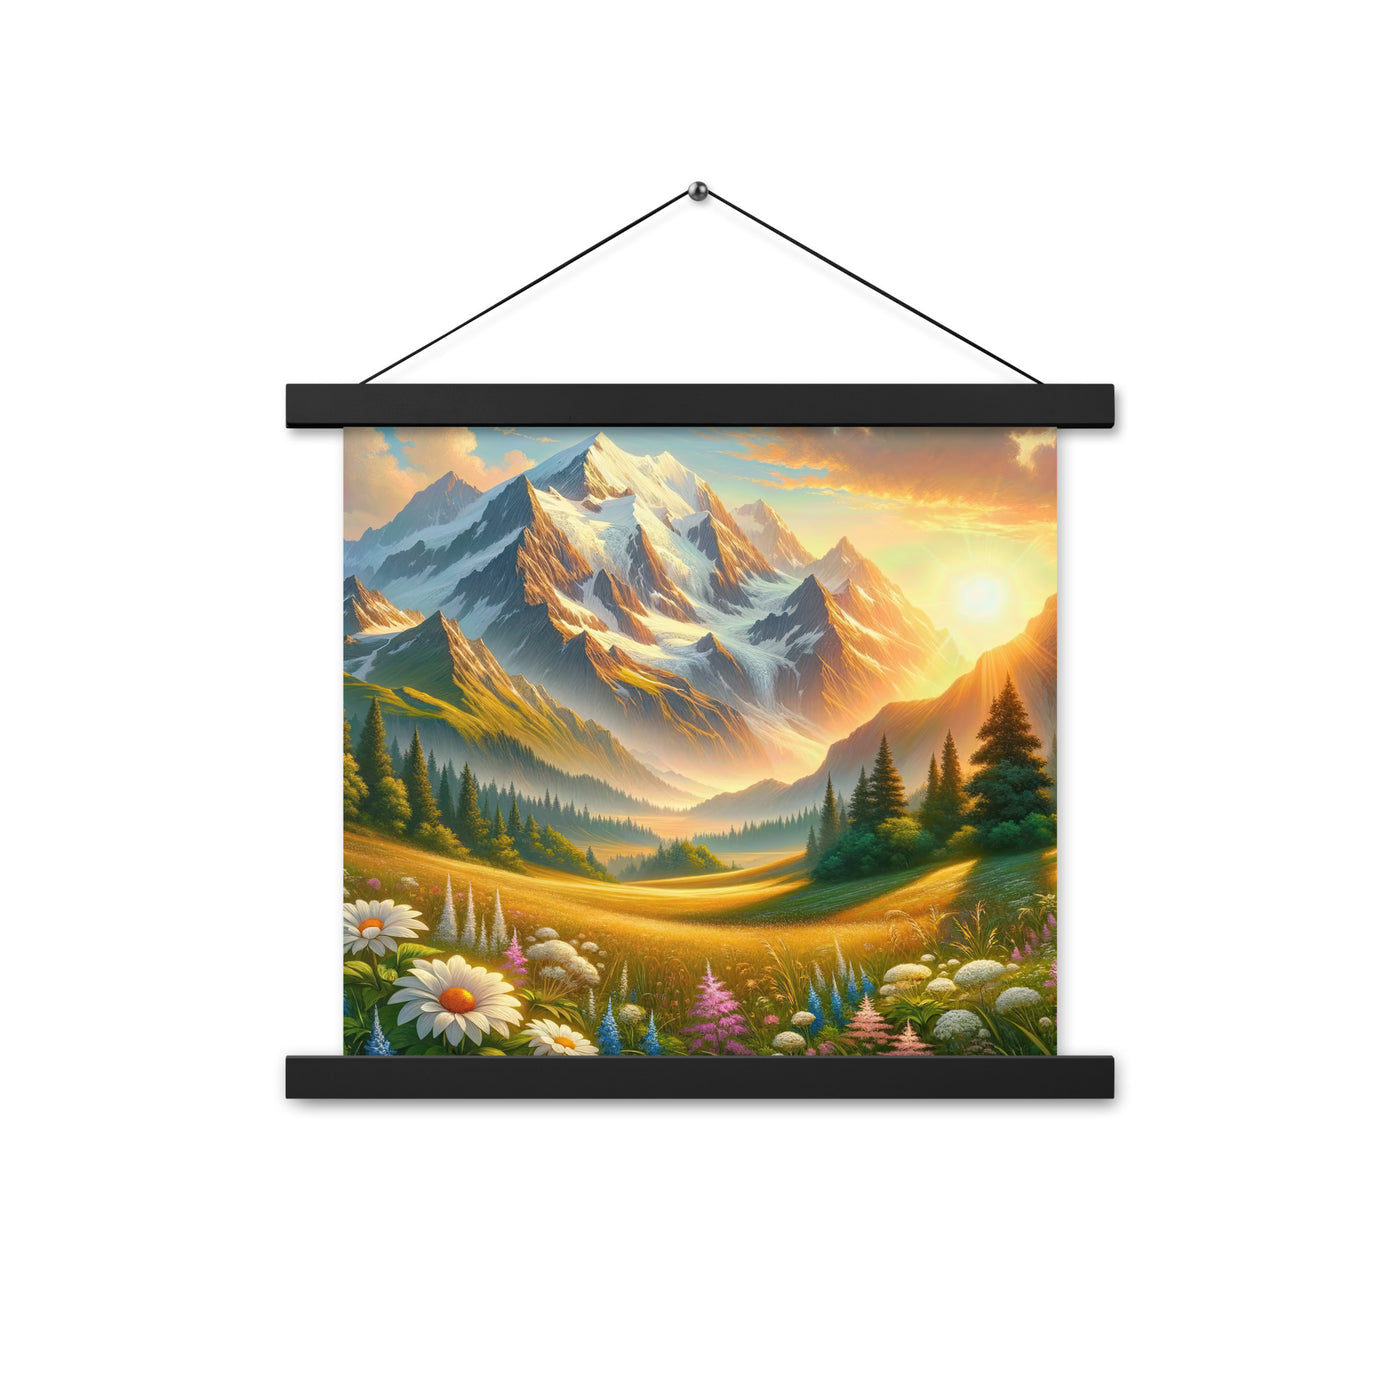 Heitere Alpenschönheit: Schneeberge und Wildblumenwiesen - Premium Poster mit Aufhängung berge xxx yyy zzz 35.6 x 35.6 cm